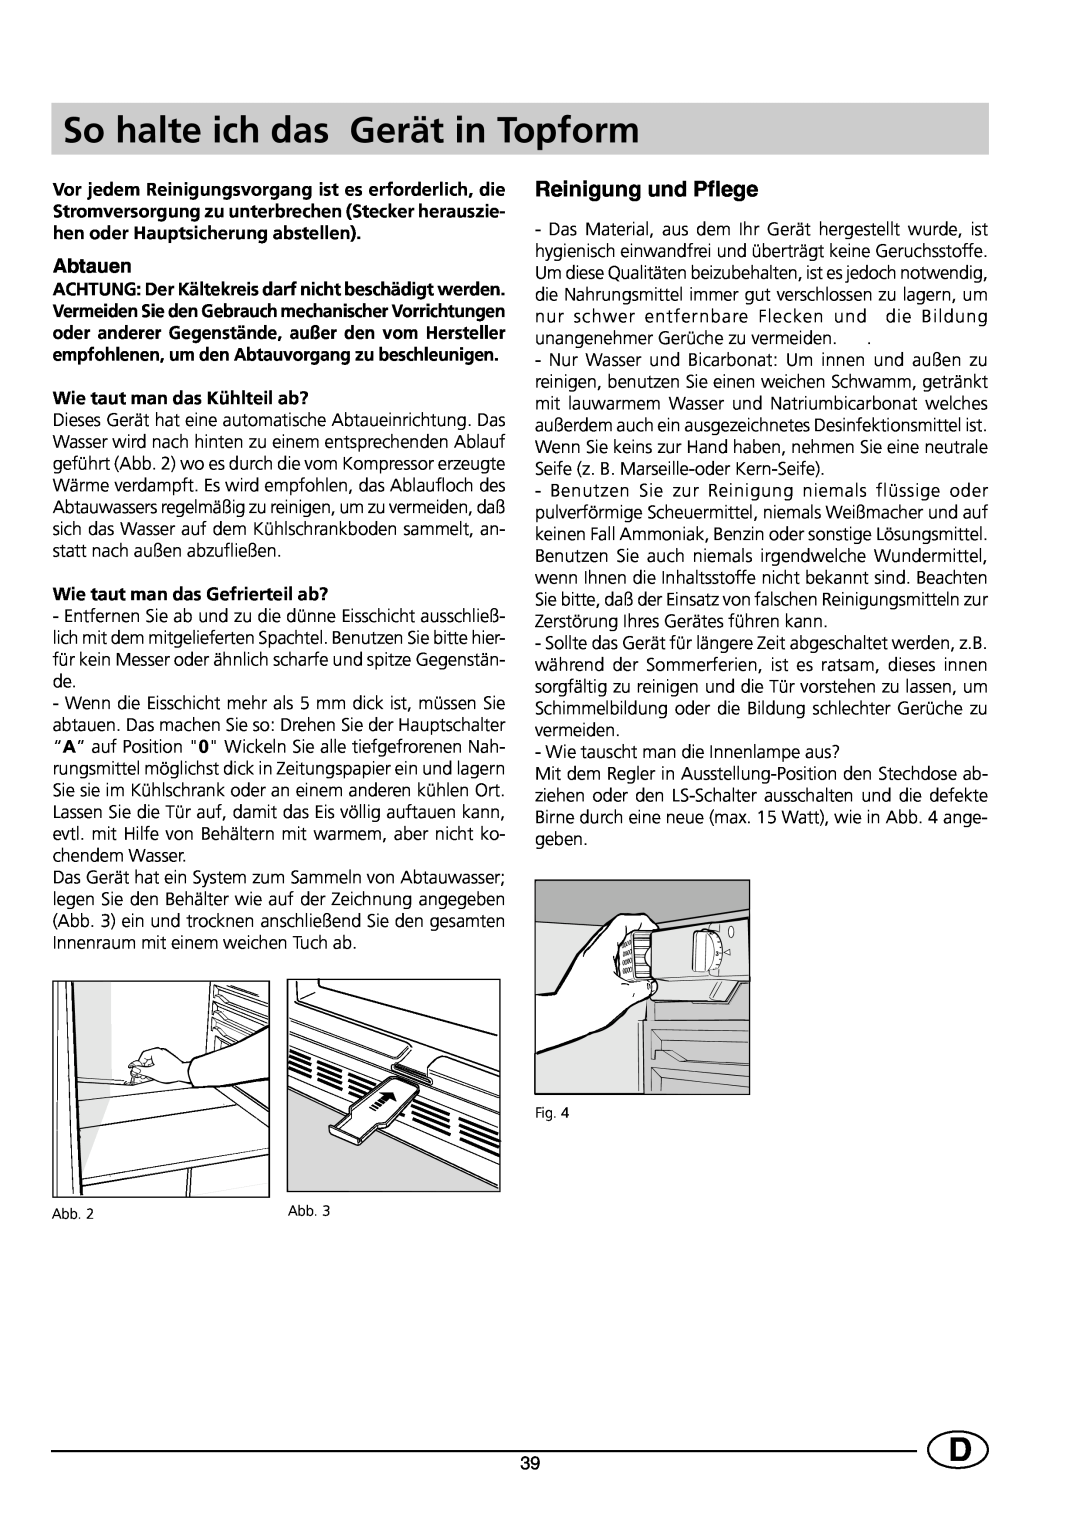 Smeg CR330SE1 manual So halte ich das Gerät in Topform, Reinigung und Pflege, Abtauen, Wie taut man das Kühlteil ab? 